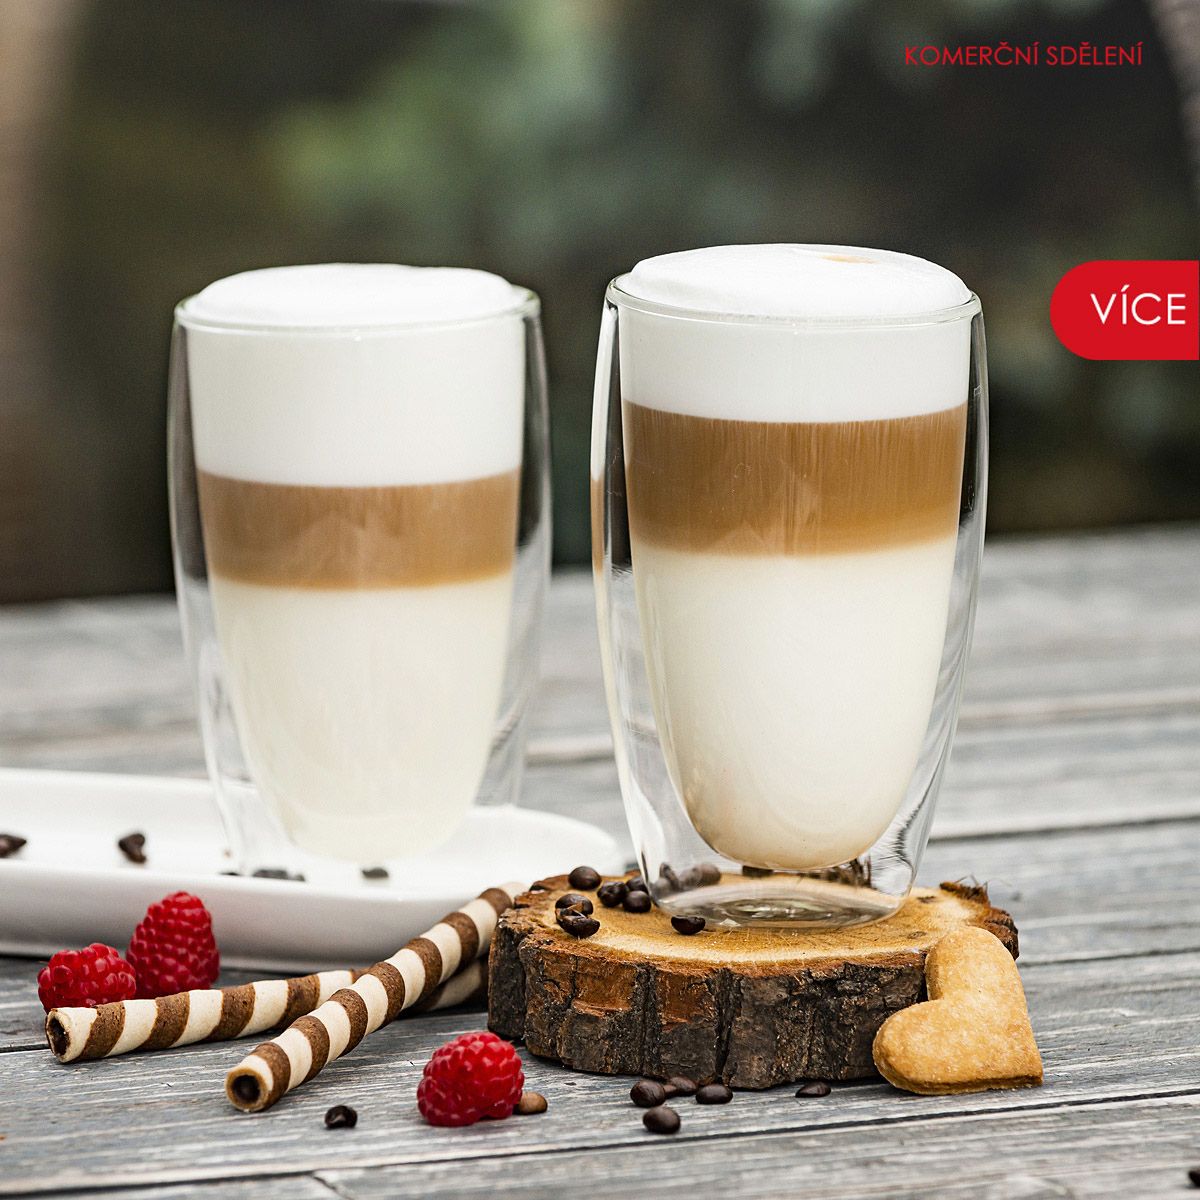 Termo sklenice na latté Hot&Cool, 2 ks. Díky termoizolačním vlastnostem dvoustěnného vakuového skla zůstává i při použití horkého nápoje vnější vrstva sklenice chladná a nedochází tak k nechtěnému spálení. Cena 229 Kč